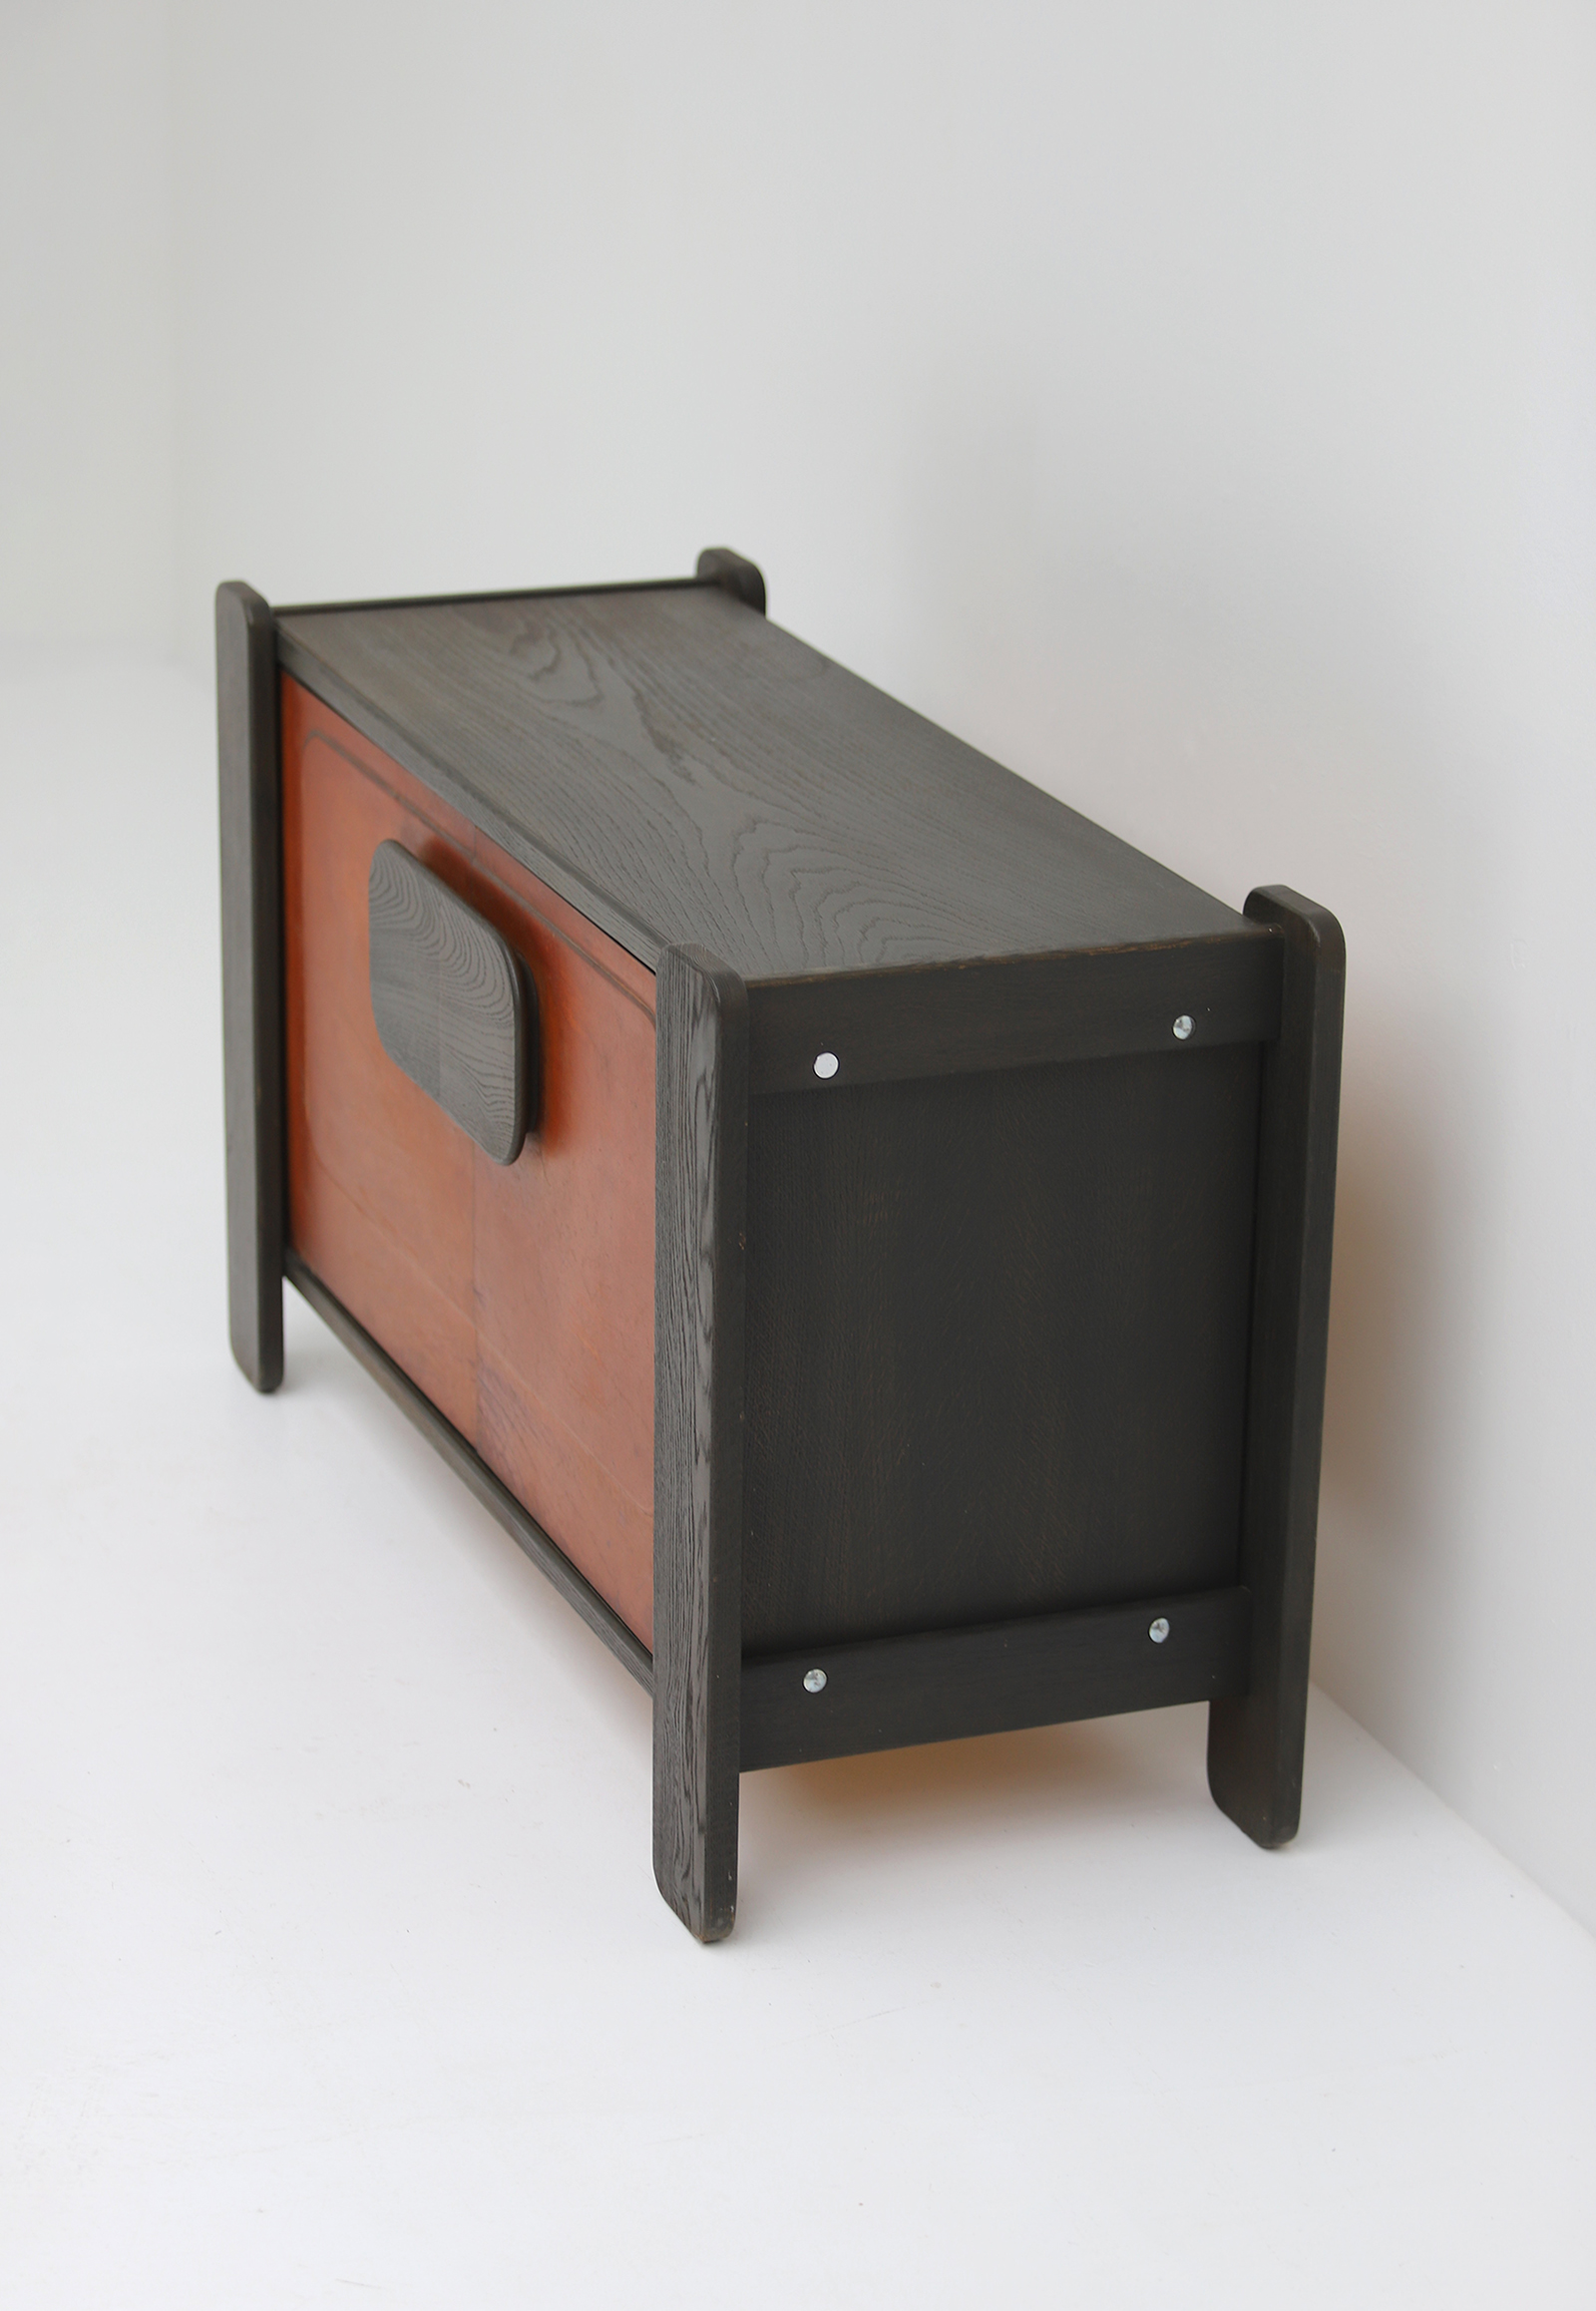 1976 Hi-Plan Design Furniture Cabinet with Leather Doorsimage 6